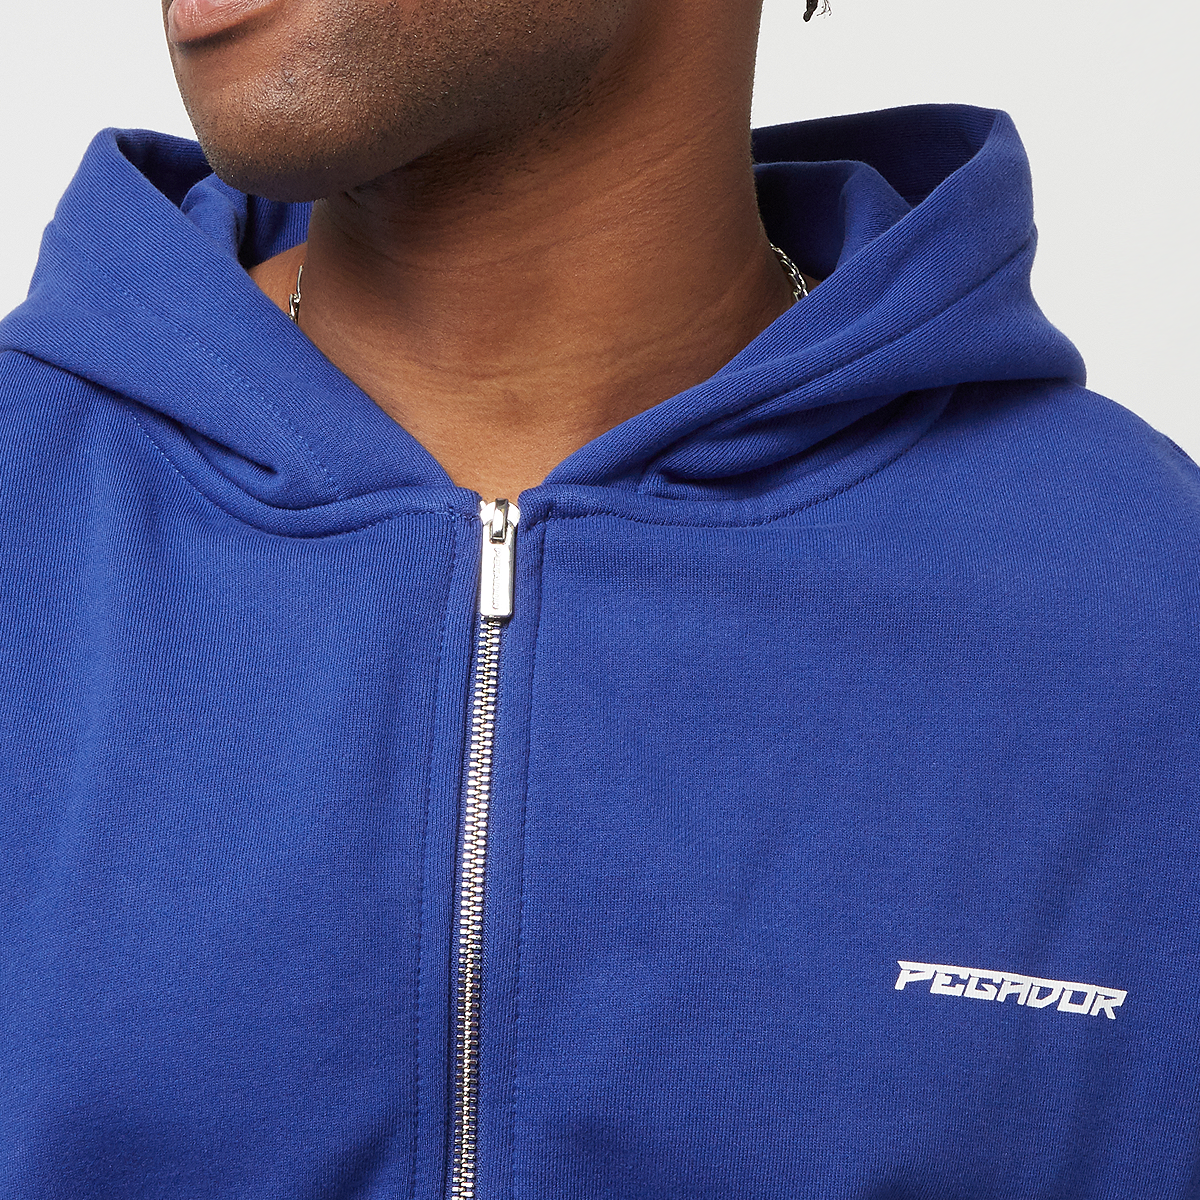 Pegador Devon Oversized Sweat Jacket Hooded vesten Heren washed endless blue maat: S beschikbare maaten:S M L XL